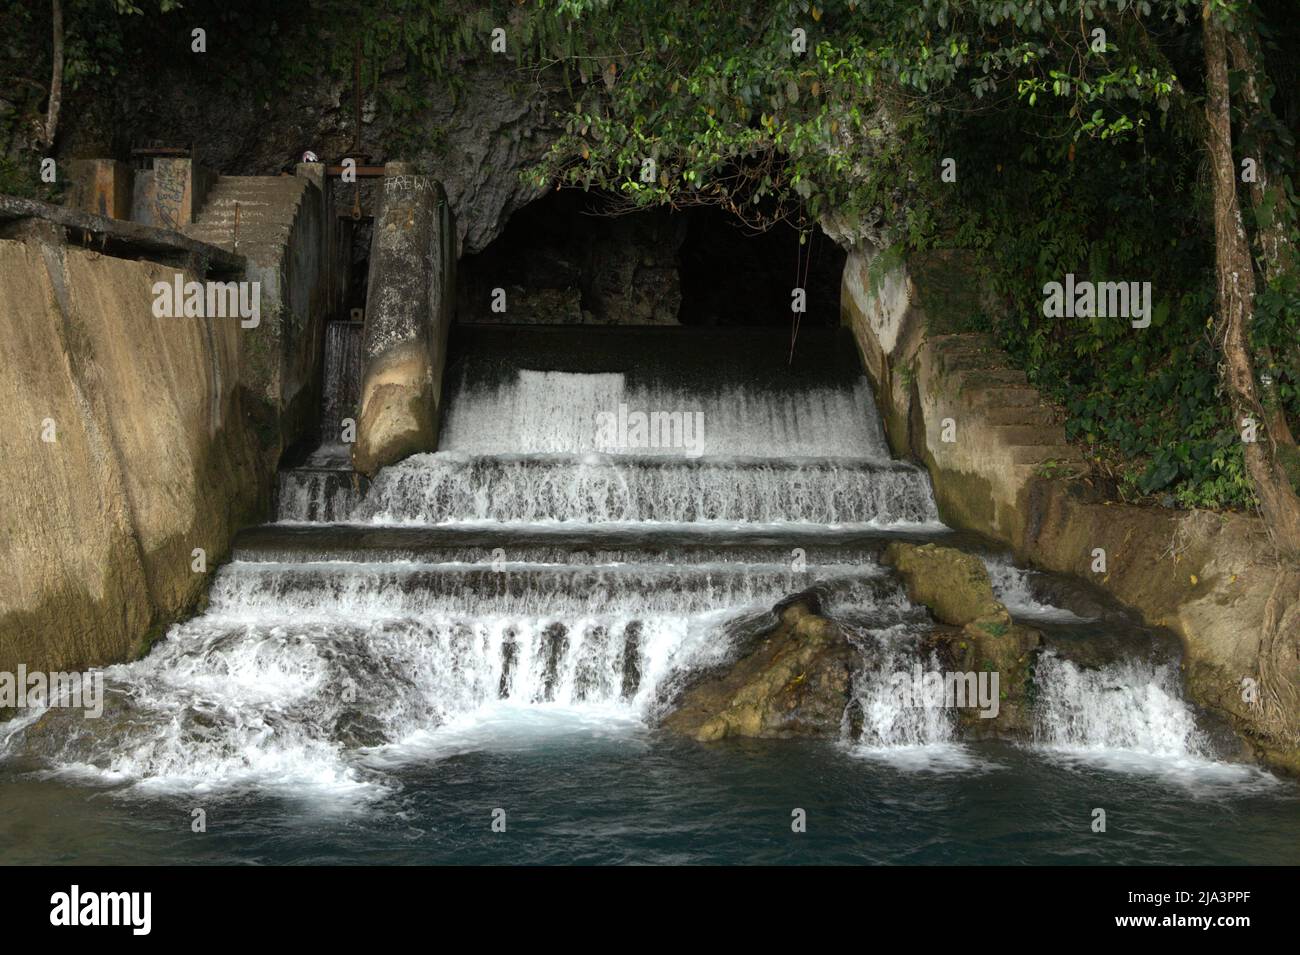 Une chute d'eau et un barrage dans les grottes calcaires de Waikelo Sawah, une source d'eau rare à Sumba, une île régulièrement touchée par la sécheresse, située dans le village de Tema Tana, East Wewewa, Southwest Sumba, East Nusa Tenggara, Indonésie. Banque D'Images